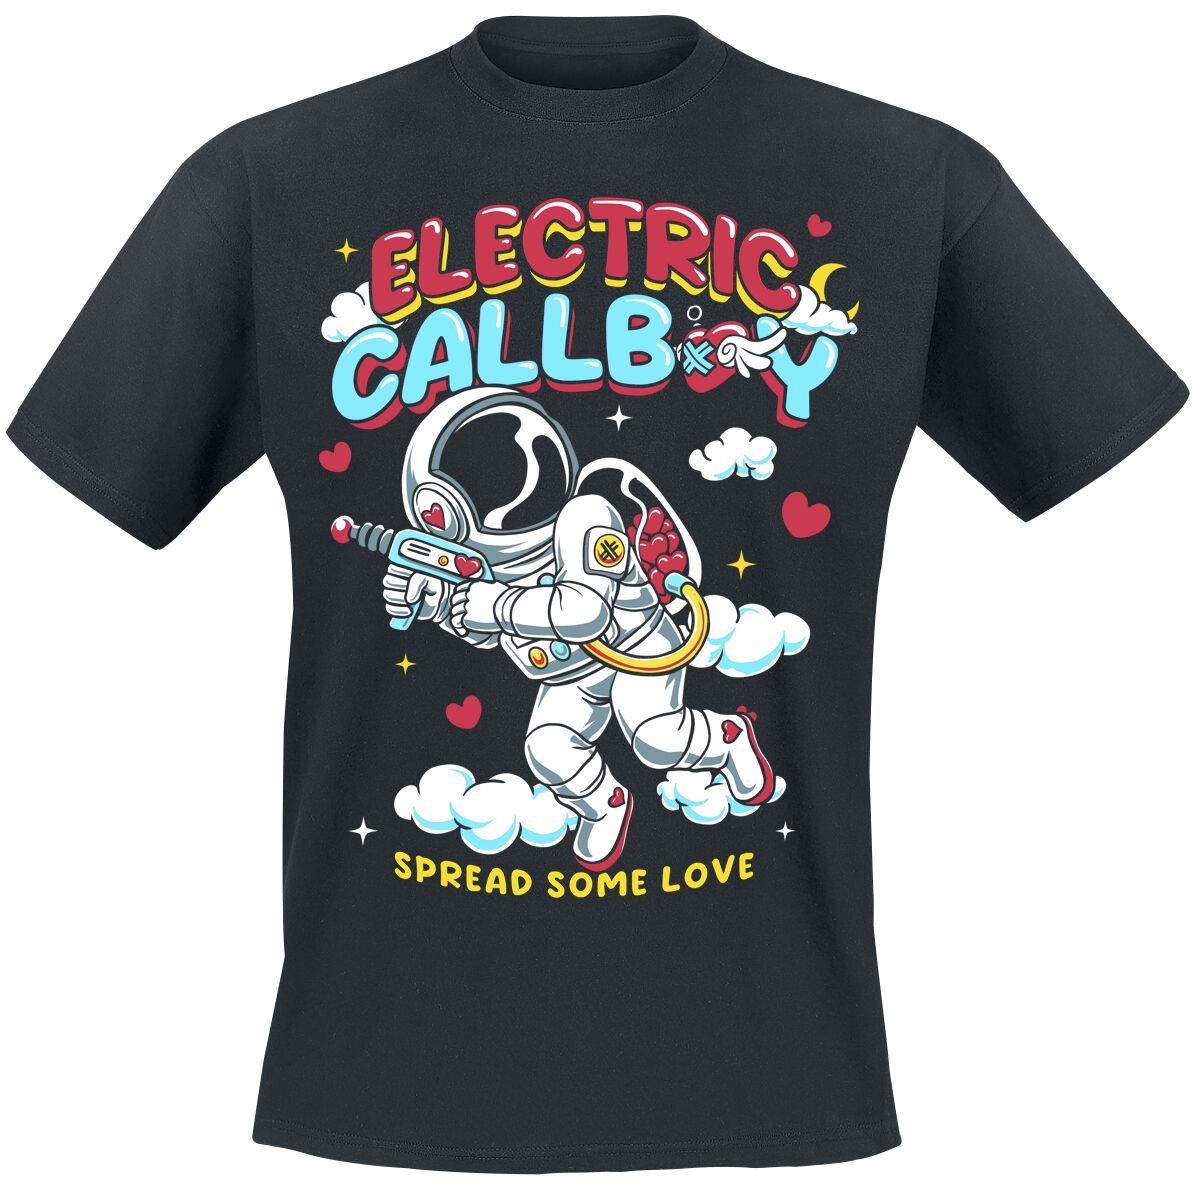 Electric Callboy T-Shirt - Spread Some Love - S bis 3XL - für Männer - Größe XXL - schwarz  - EMP exklusives Merchandise!